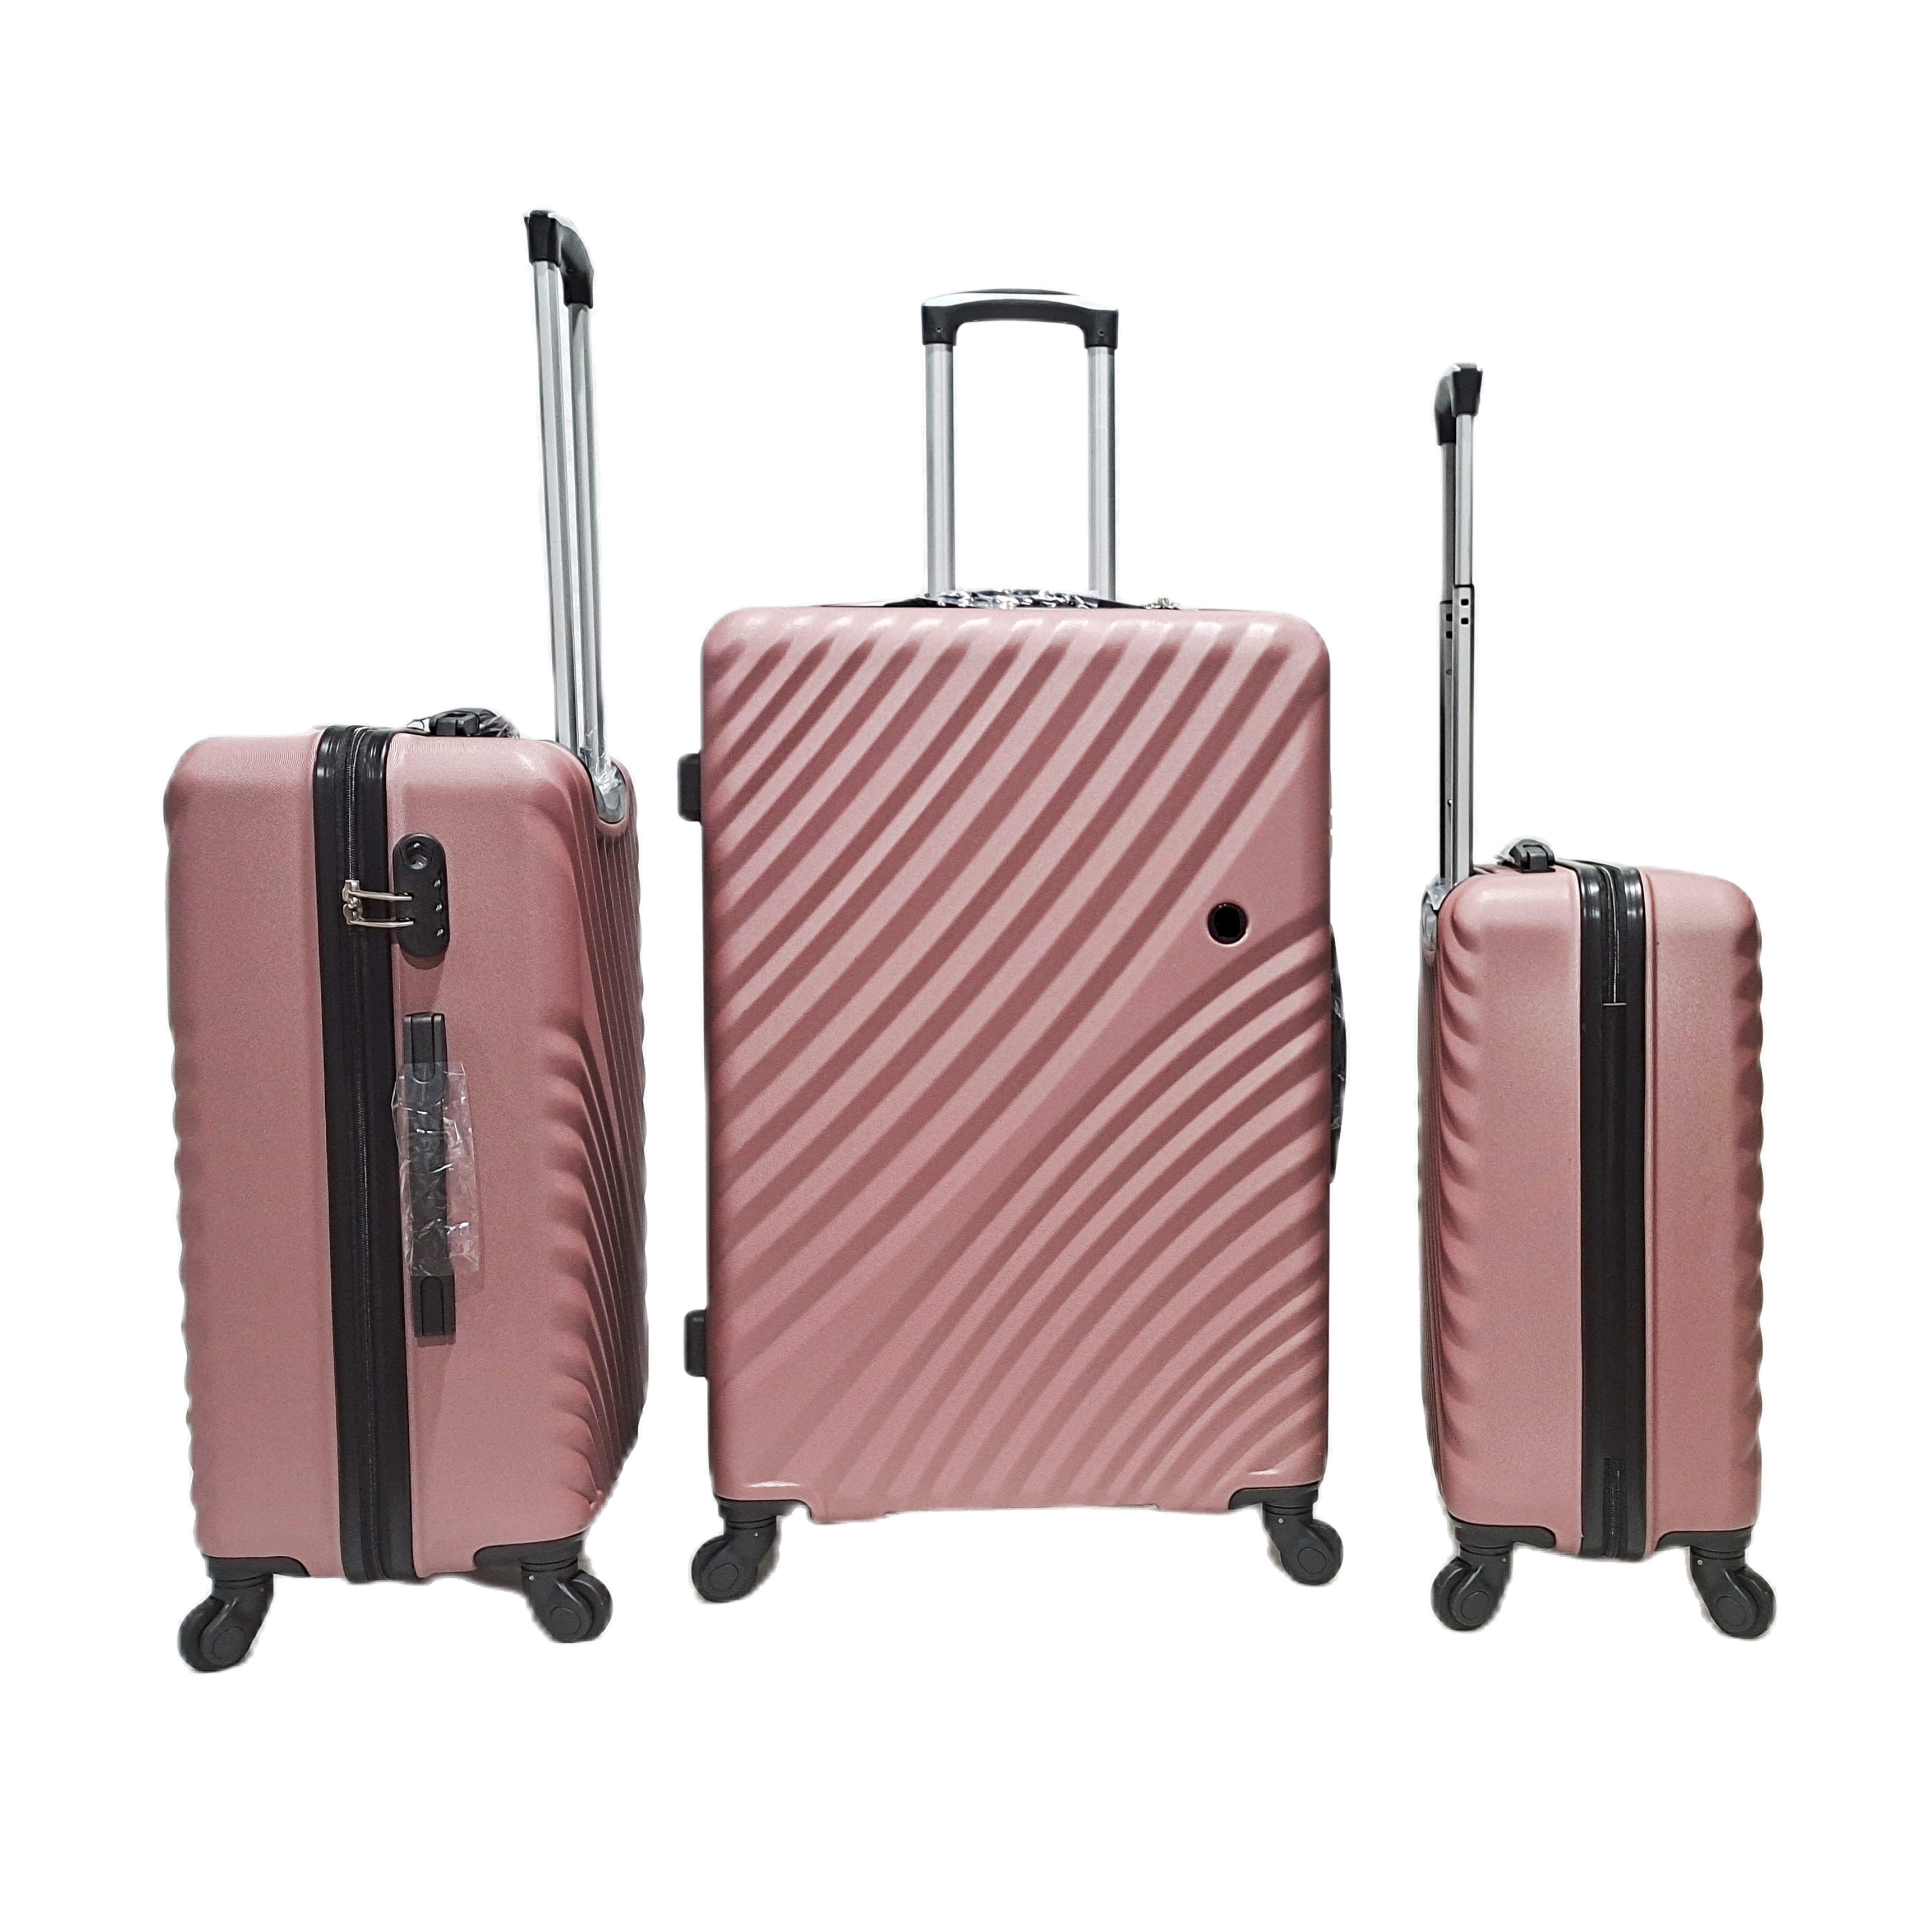 Neues Design ABS Koffer Gepäck Reisetaschen 4 Spinner Wheel Trolley Koffer Set